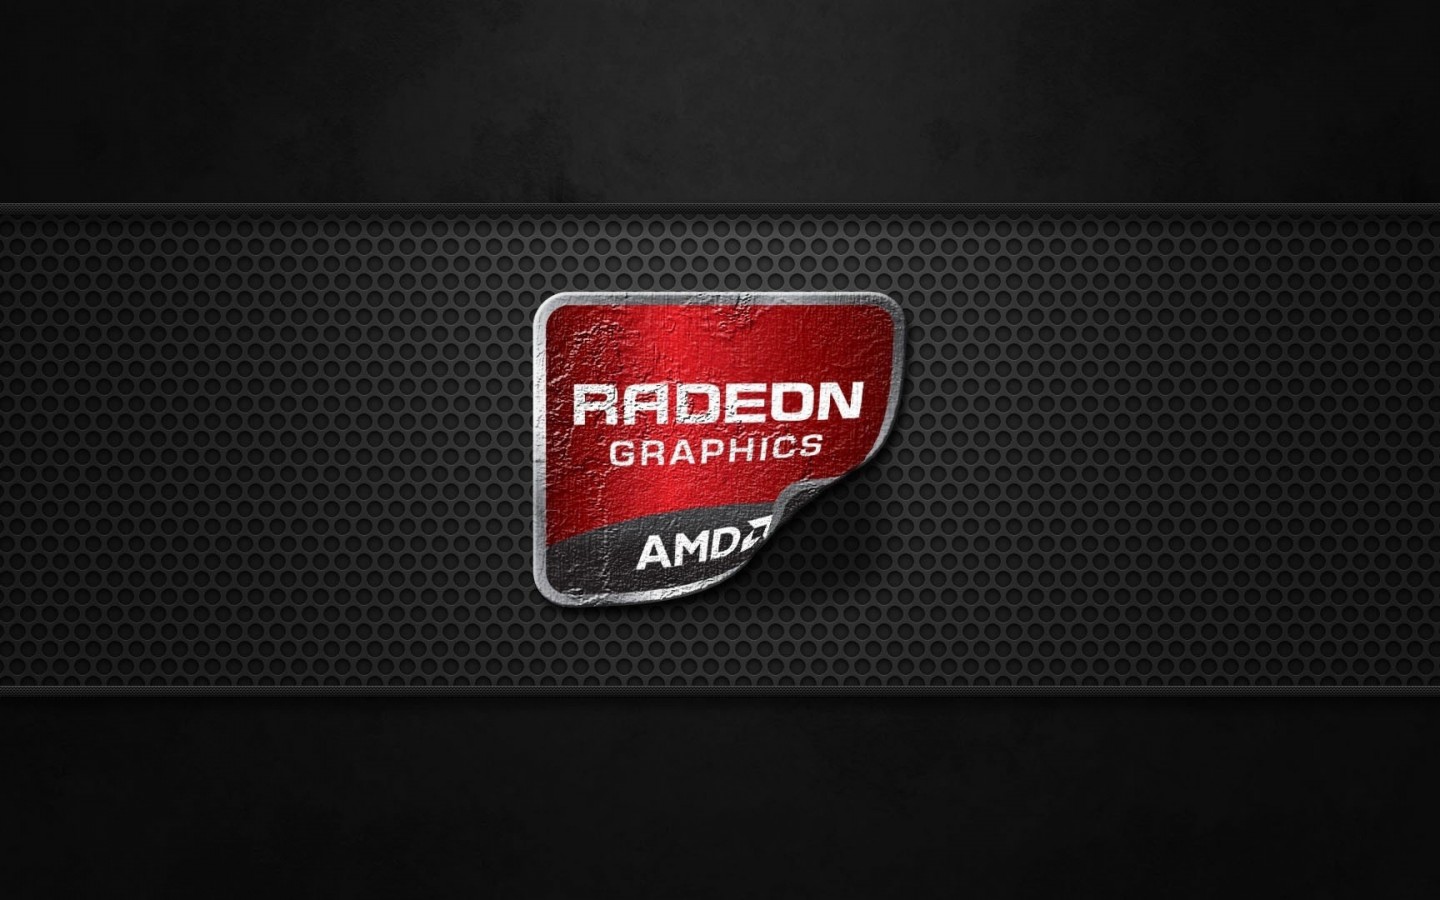 AMD Radeon Graphics Wallpaper for Desktop 1440x900